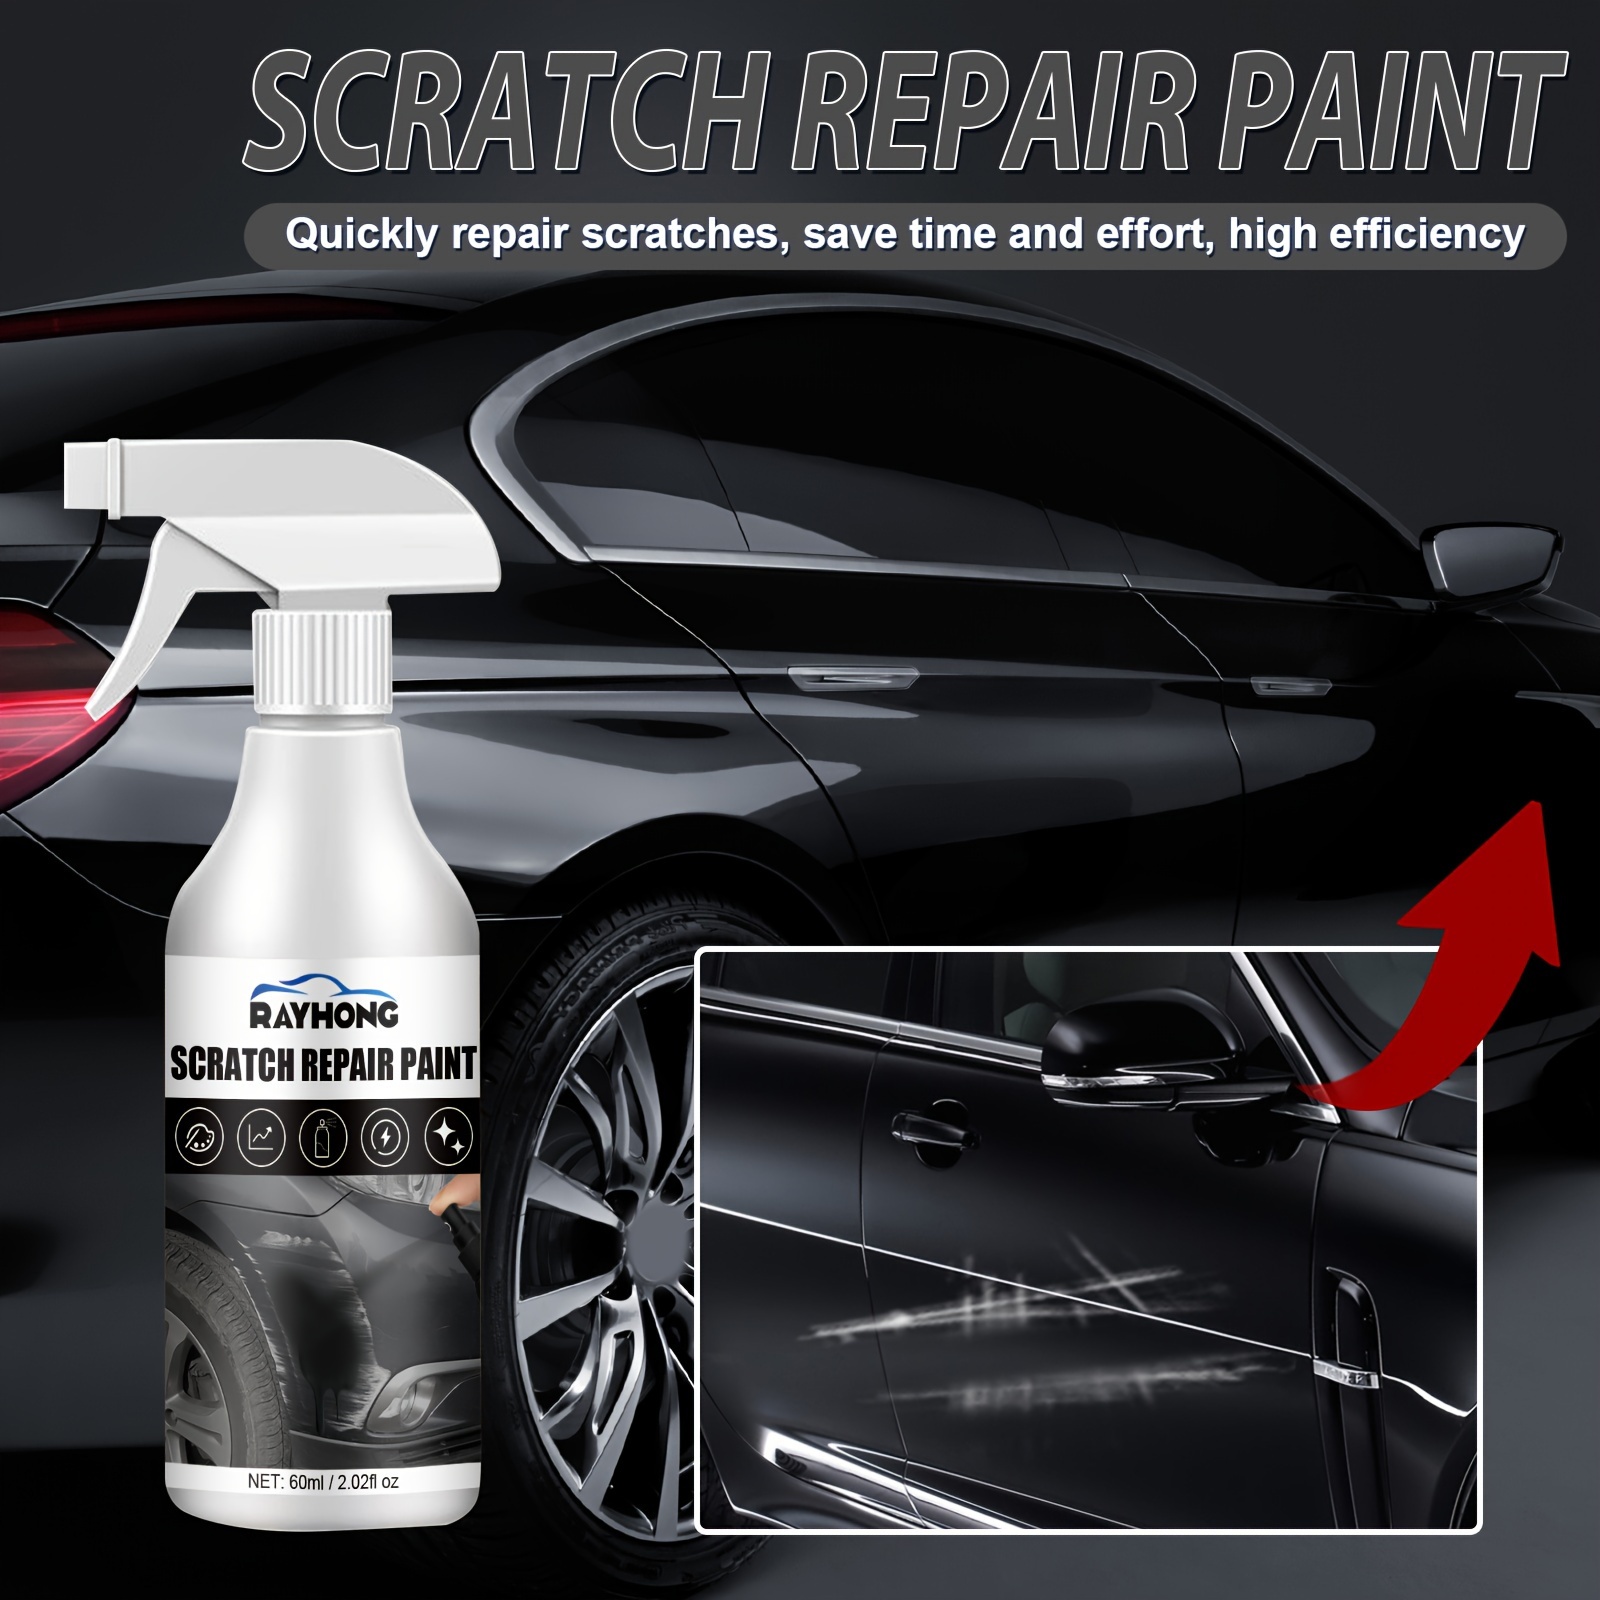  Nano Spray de eliminación de arañazos de coche, nano aerosol de  reparación de arañazos de automóvil, aerosol de pulido nti-Scratch, aerosol  de revestimiento de nano cerámica, reparación rápida de arañazos Nano